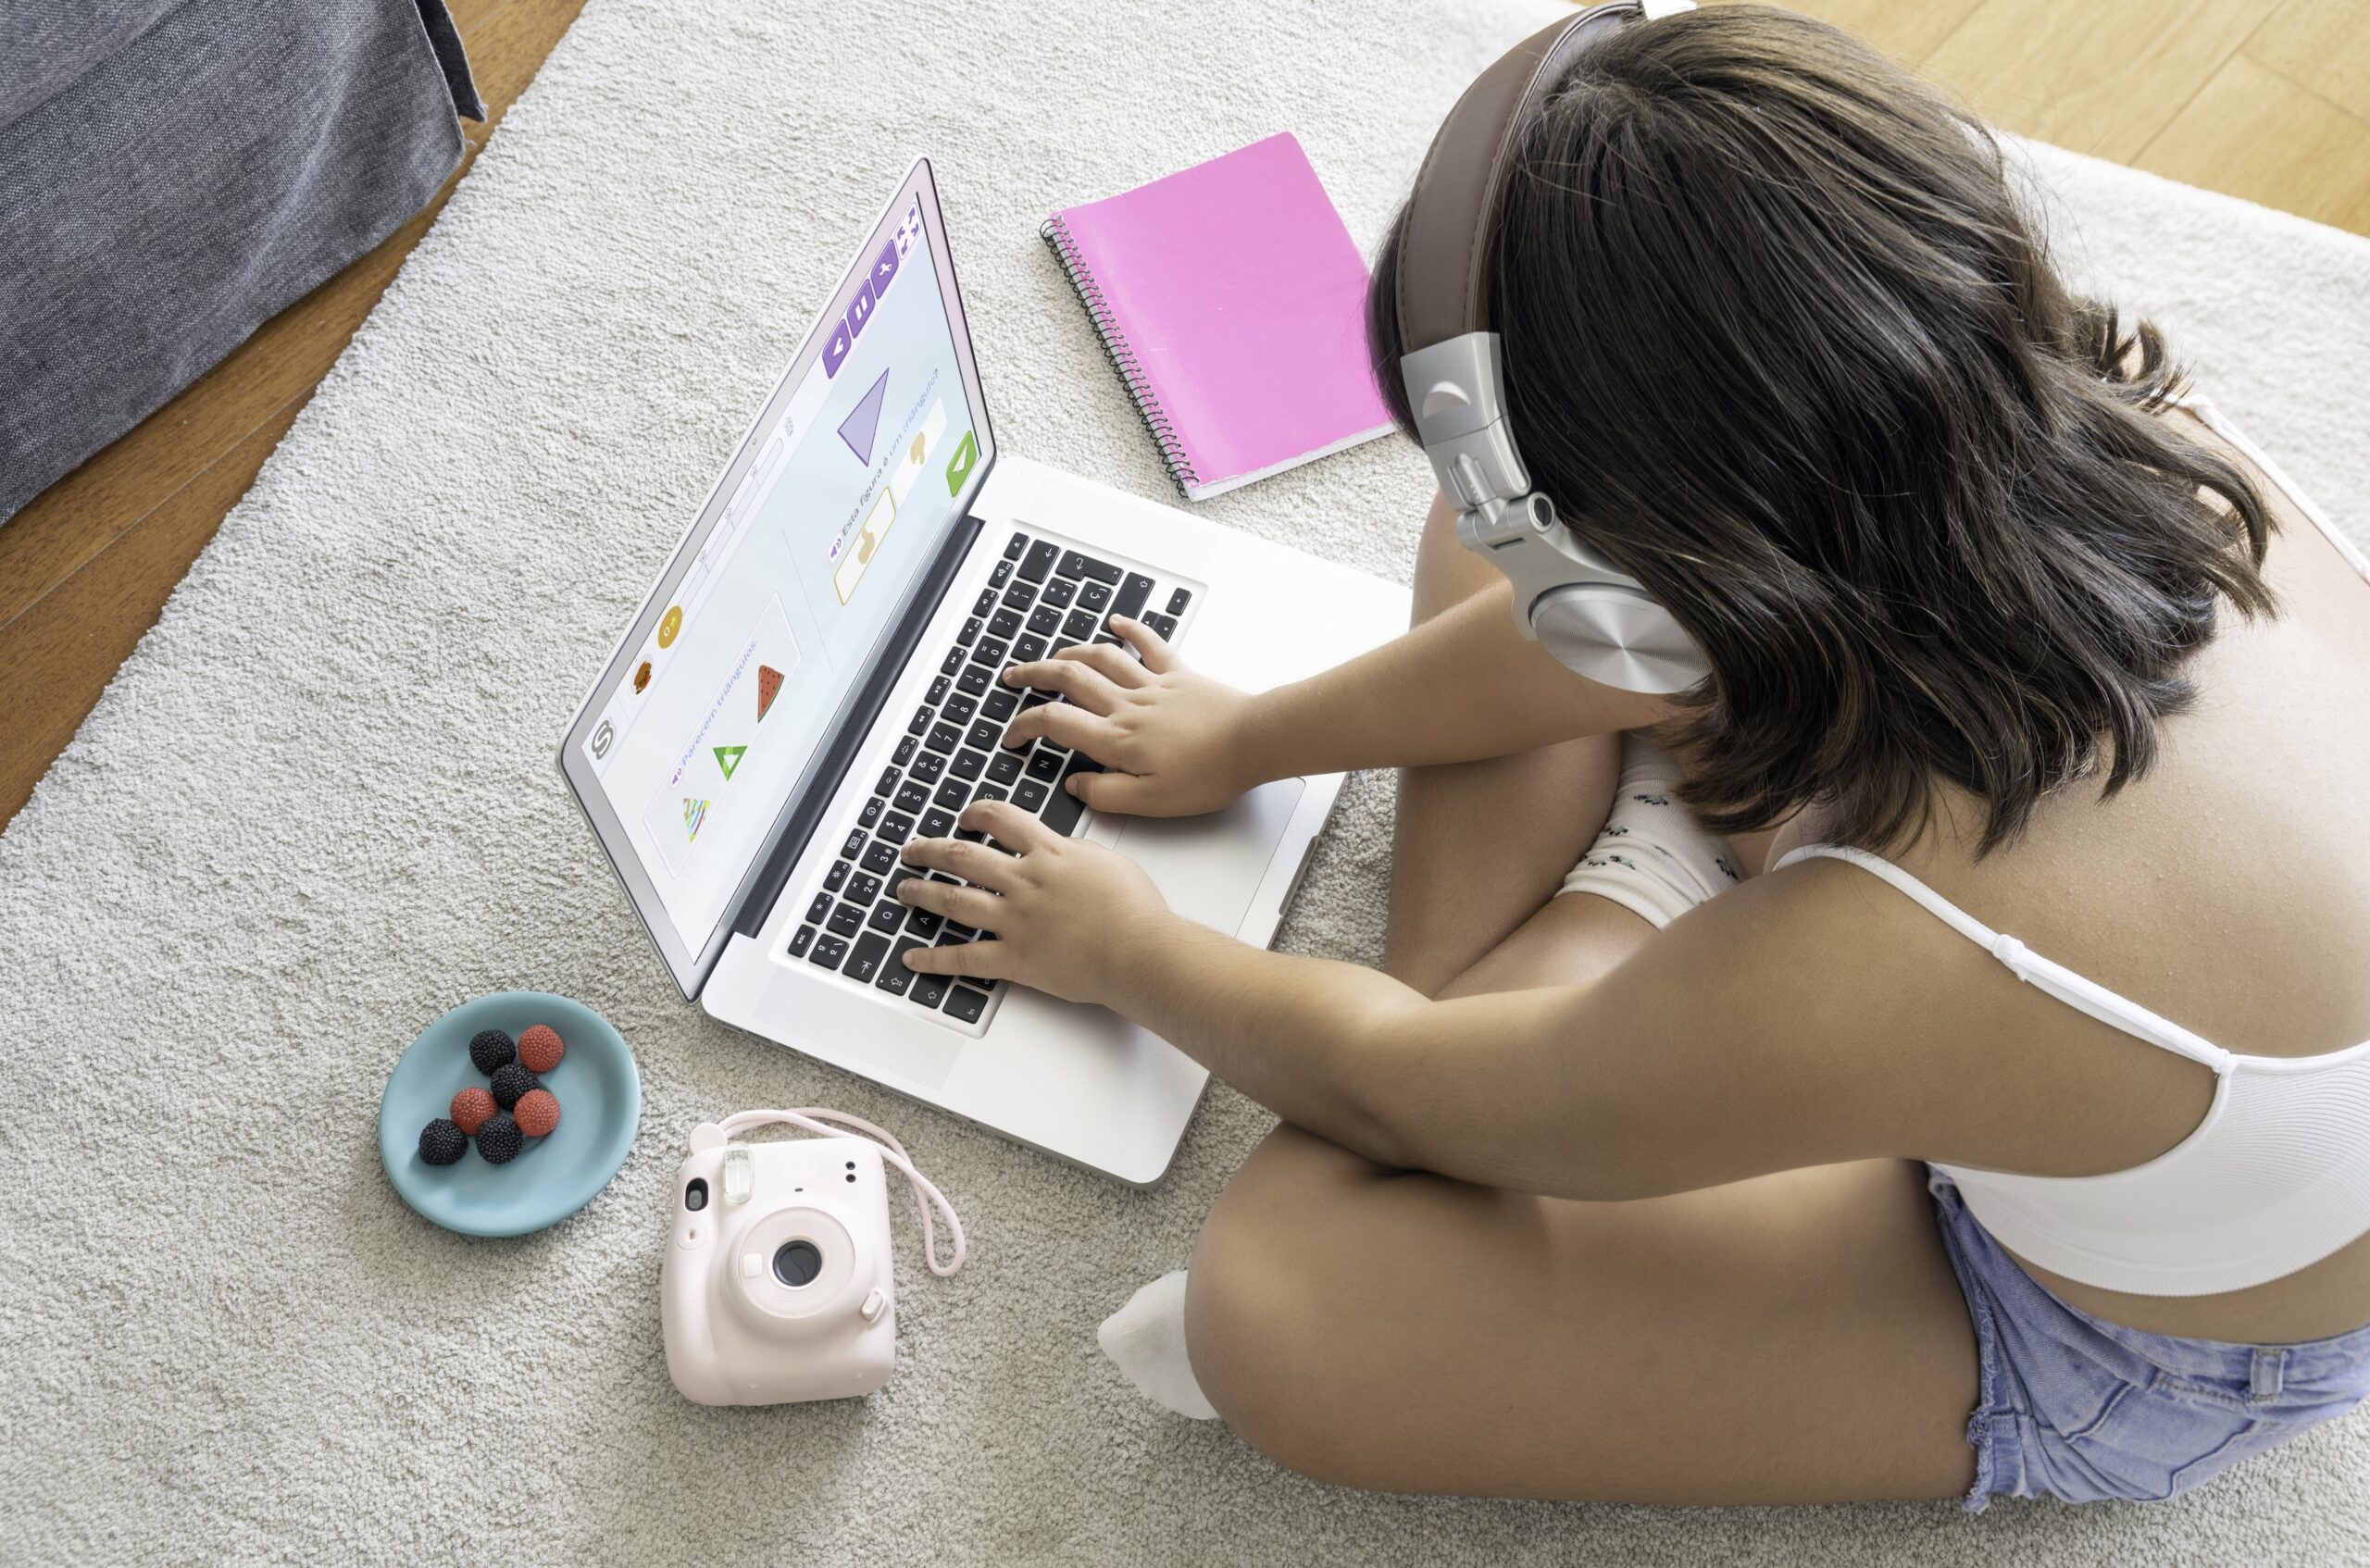 Desenvolvida para tablets e computadores, a Smartick alia tecnologia e diversão com o uso de inteligência artificial para propor desafios lúdicos as crianças e adolescentes